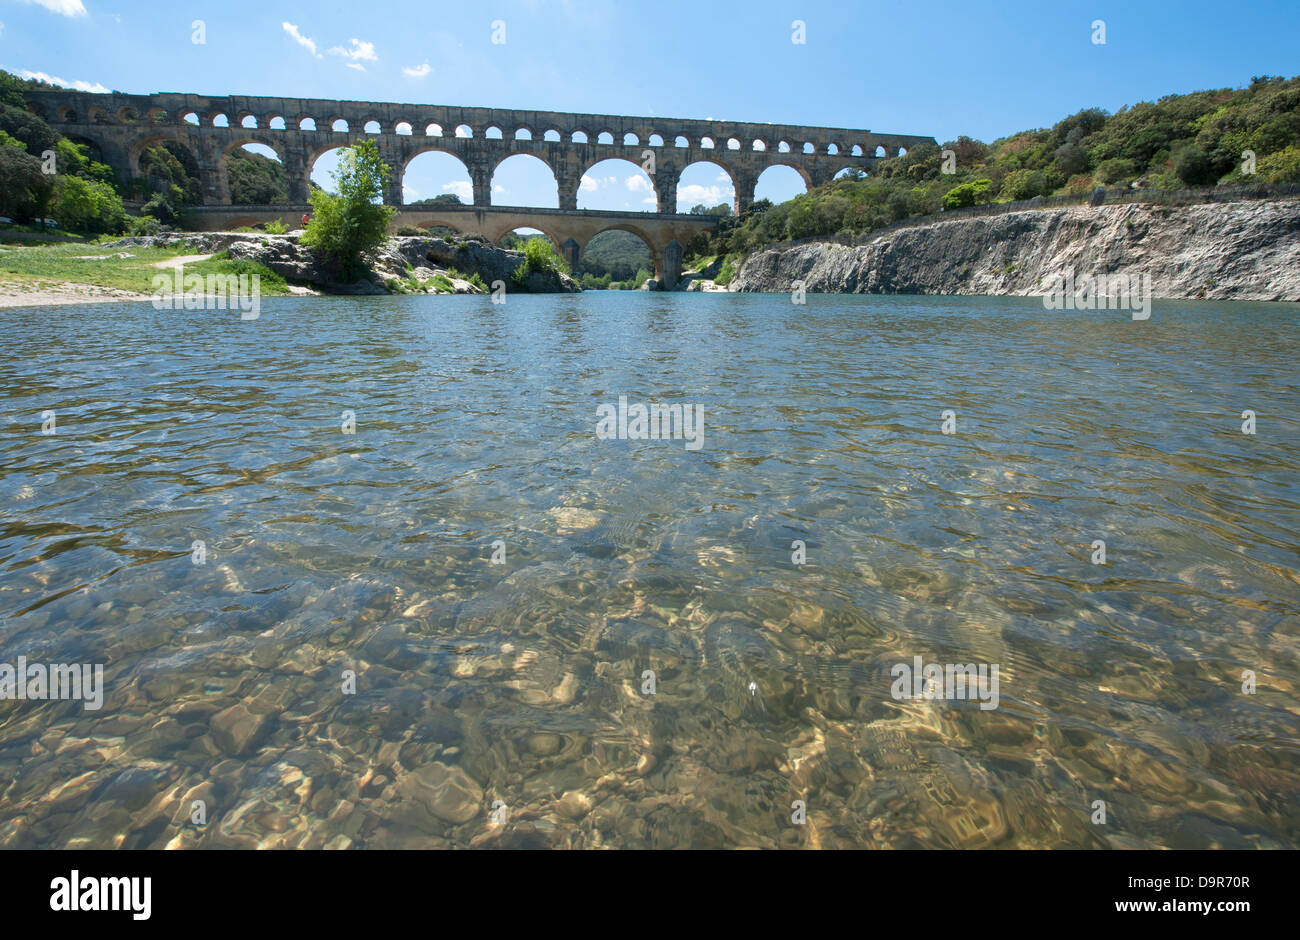 UNESCO-Welterbe der Pont du Gard, ein römisches Aquädukt in der Nähe von Nîmes im Departement Gard, von den Ufern des Flusses Gard gesehen. Stockfoto